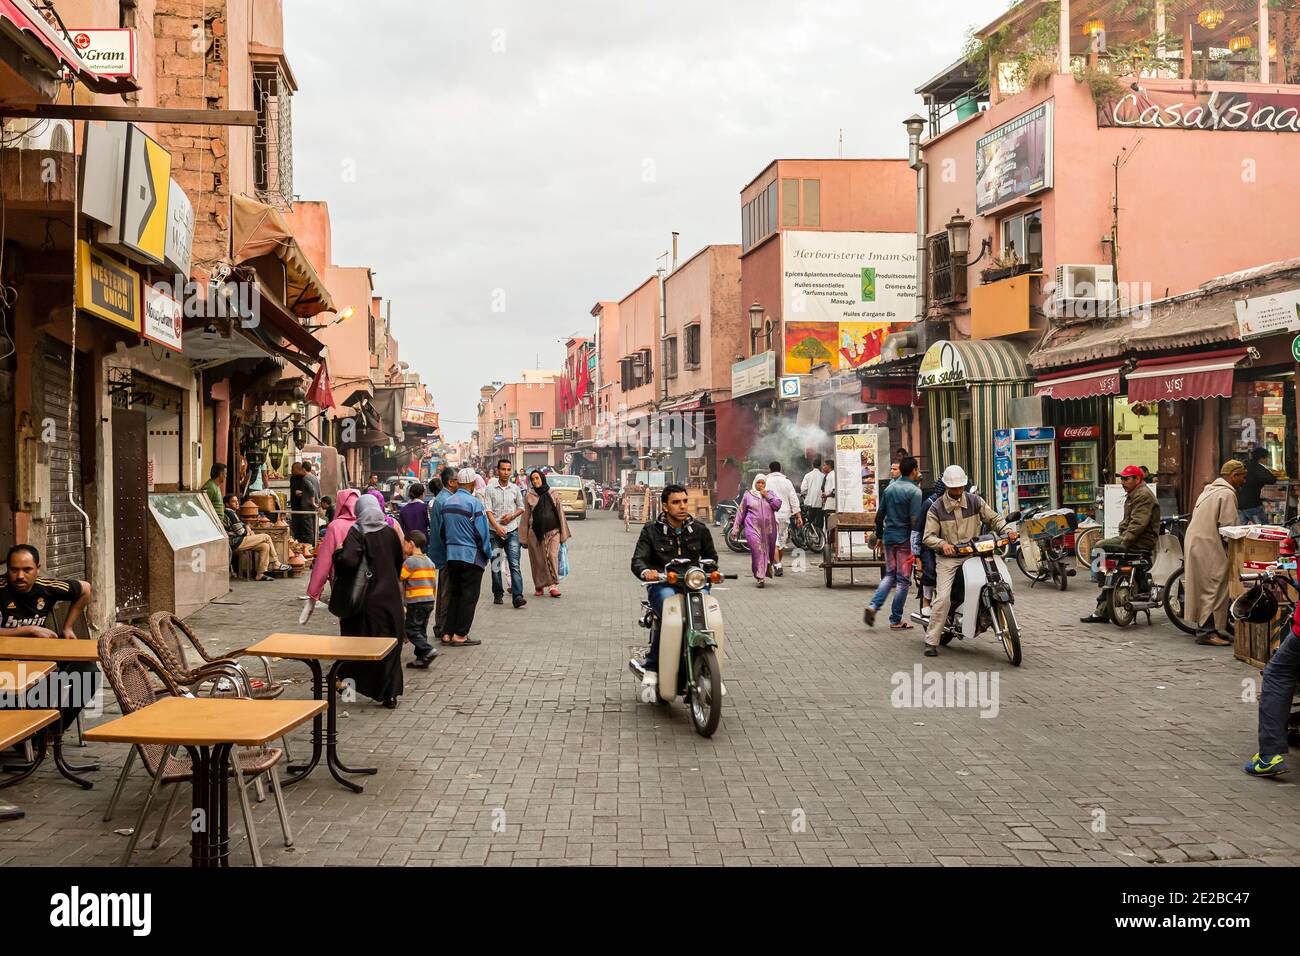 Une rue commerçante animée dans la Médina de Marrakech, avec des shoppers et motocyclistes, Maroc Banque D'Images